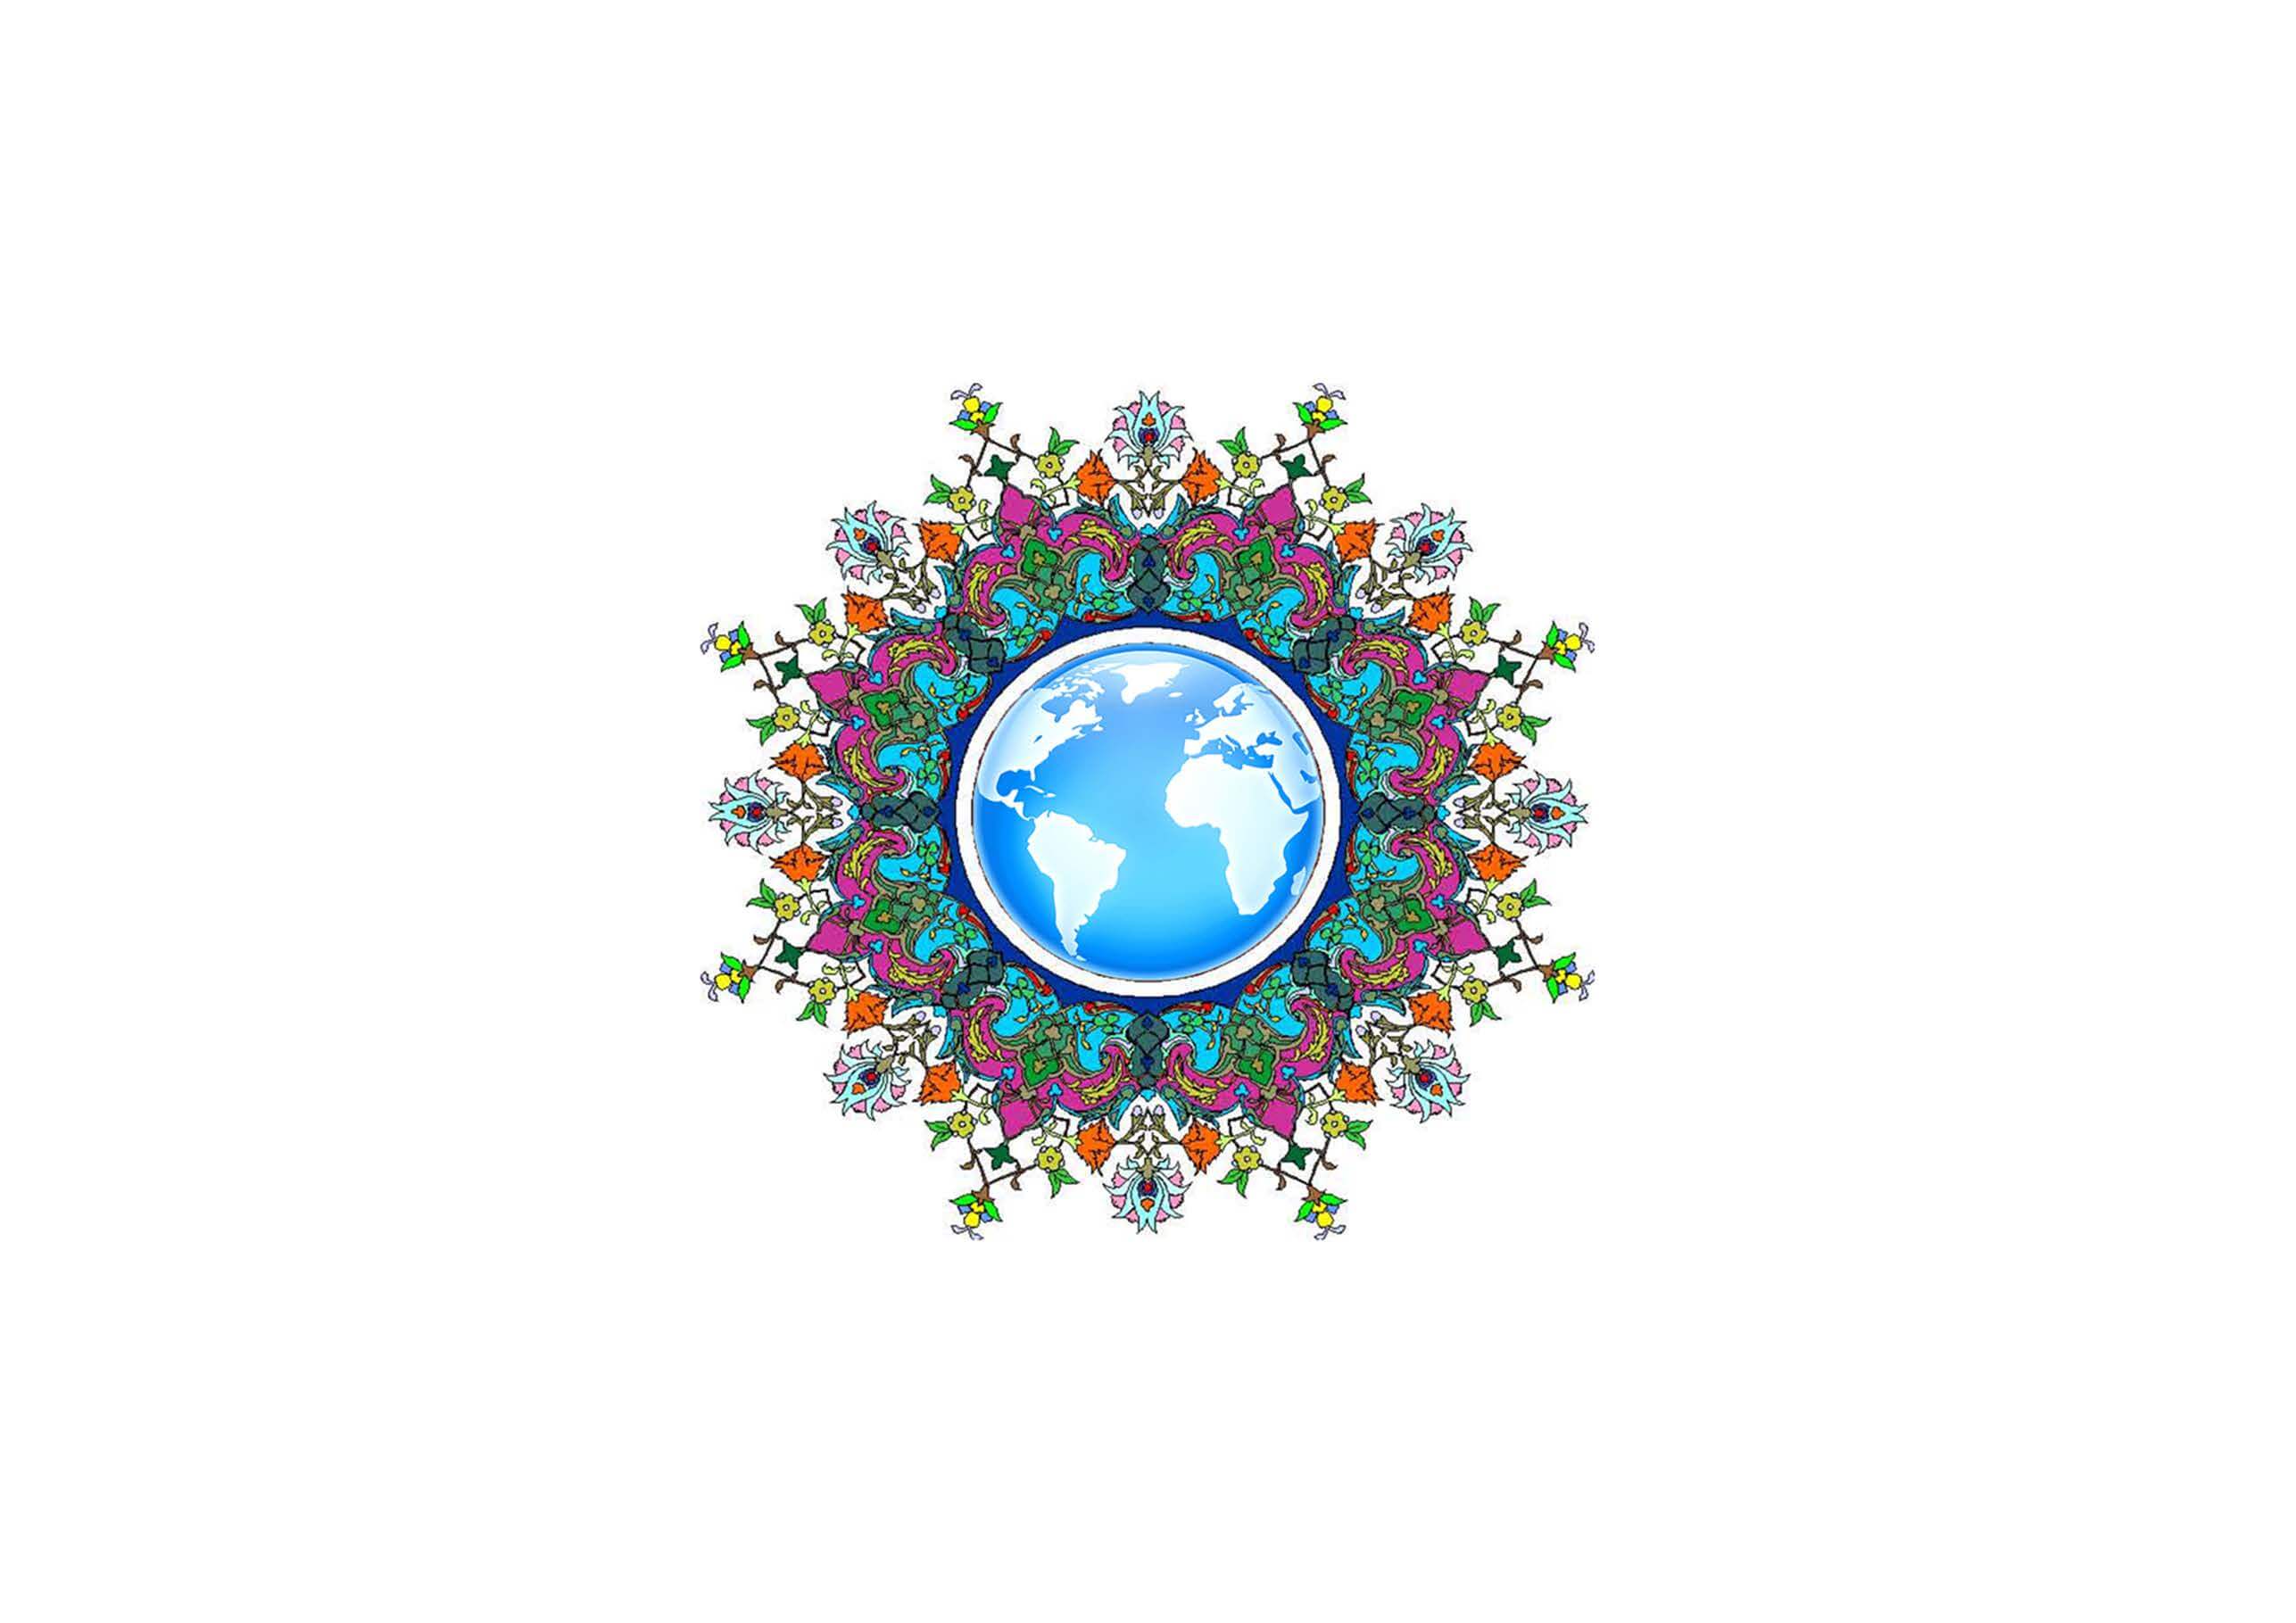 Sufi Social Worldview جهانبینی اجتماعی عرفان اسلامی